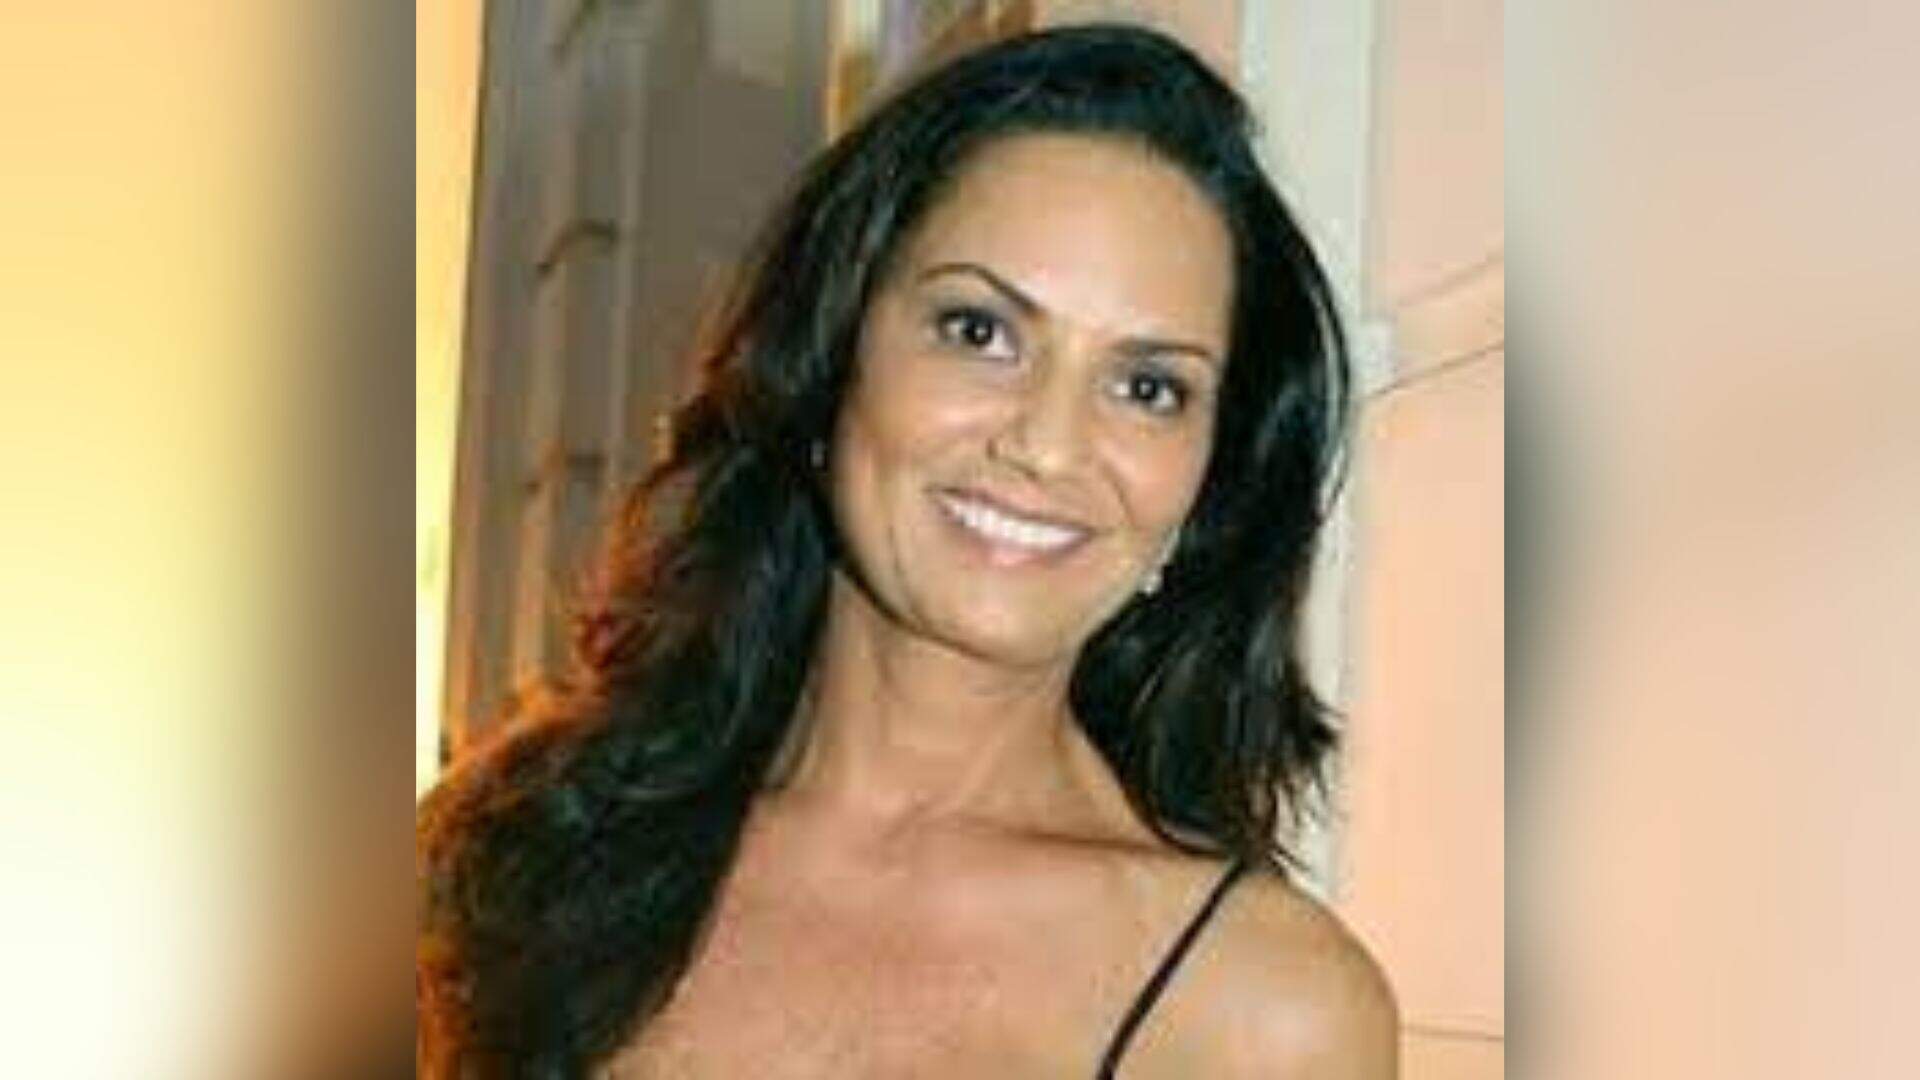 Alvo de antigos boatos, Luiza Brunet nega quatro ‘amores’ famosos, mas diz que um deles é ‘crush’